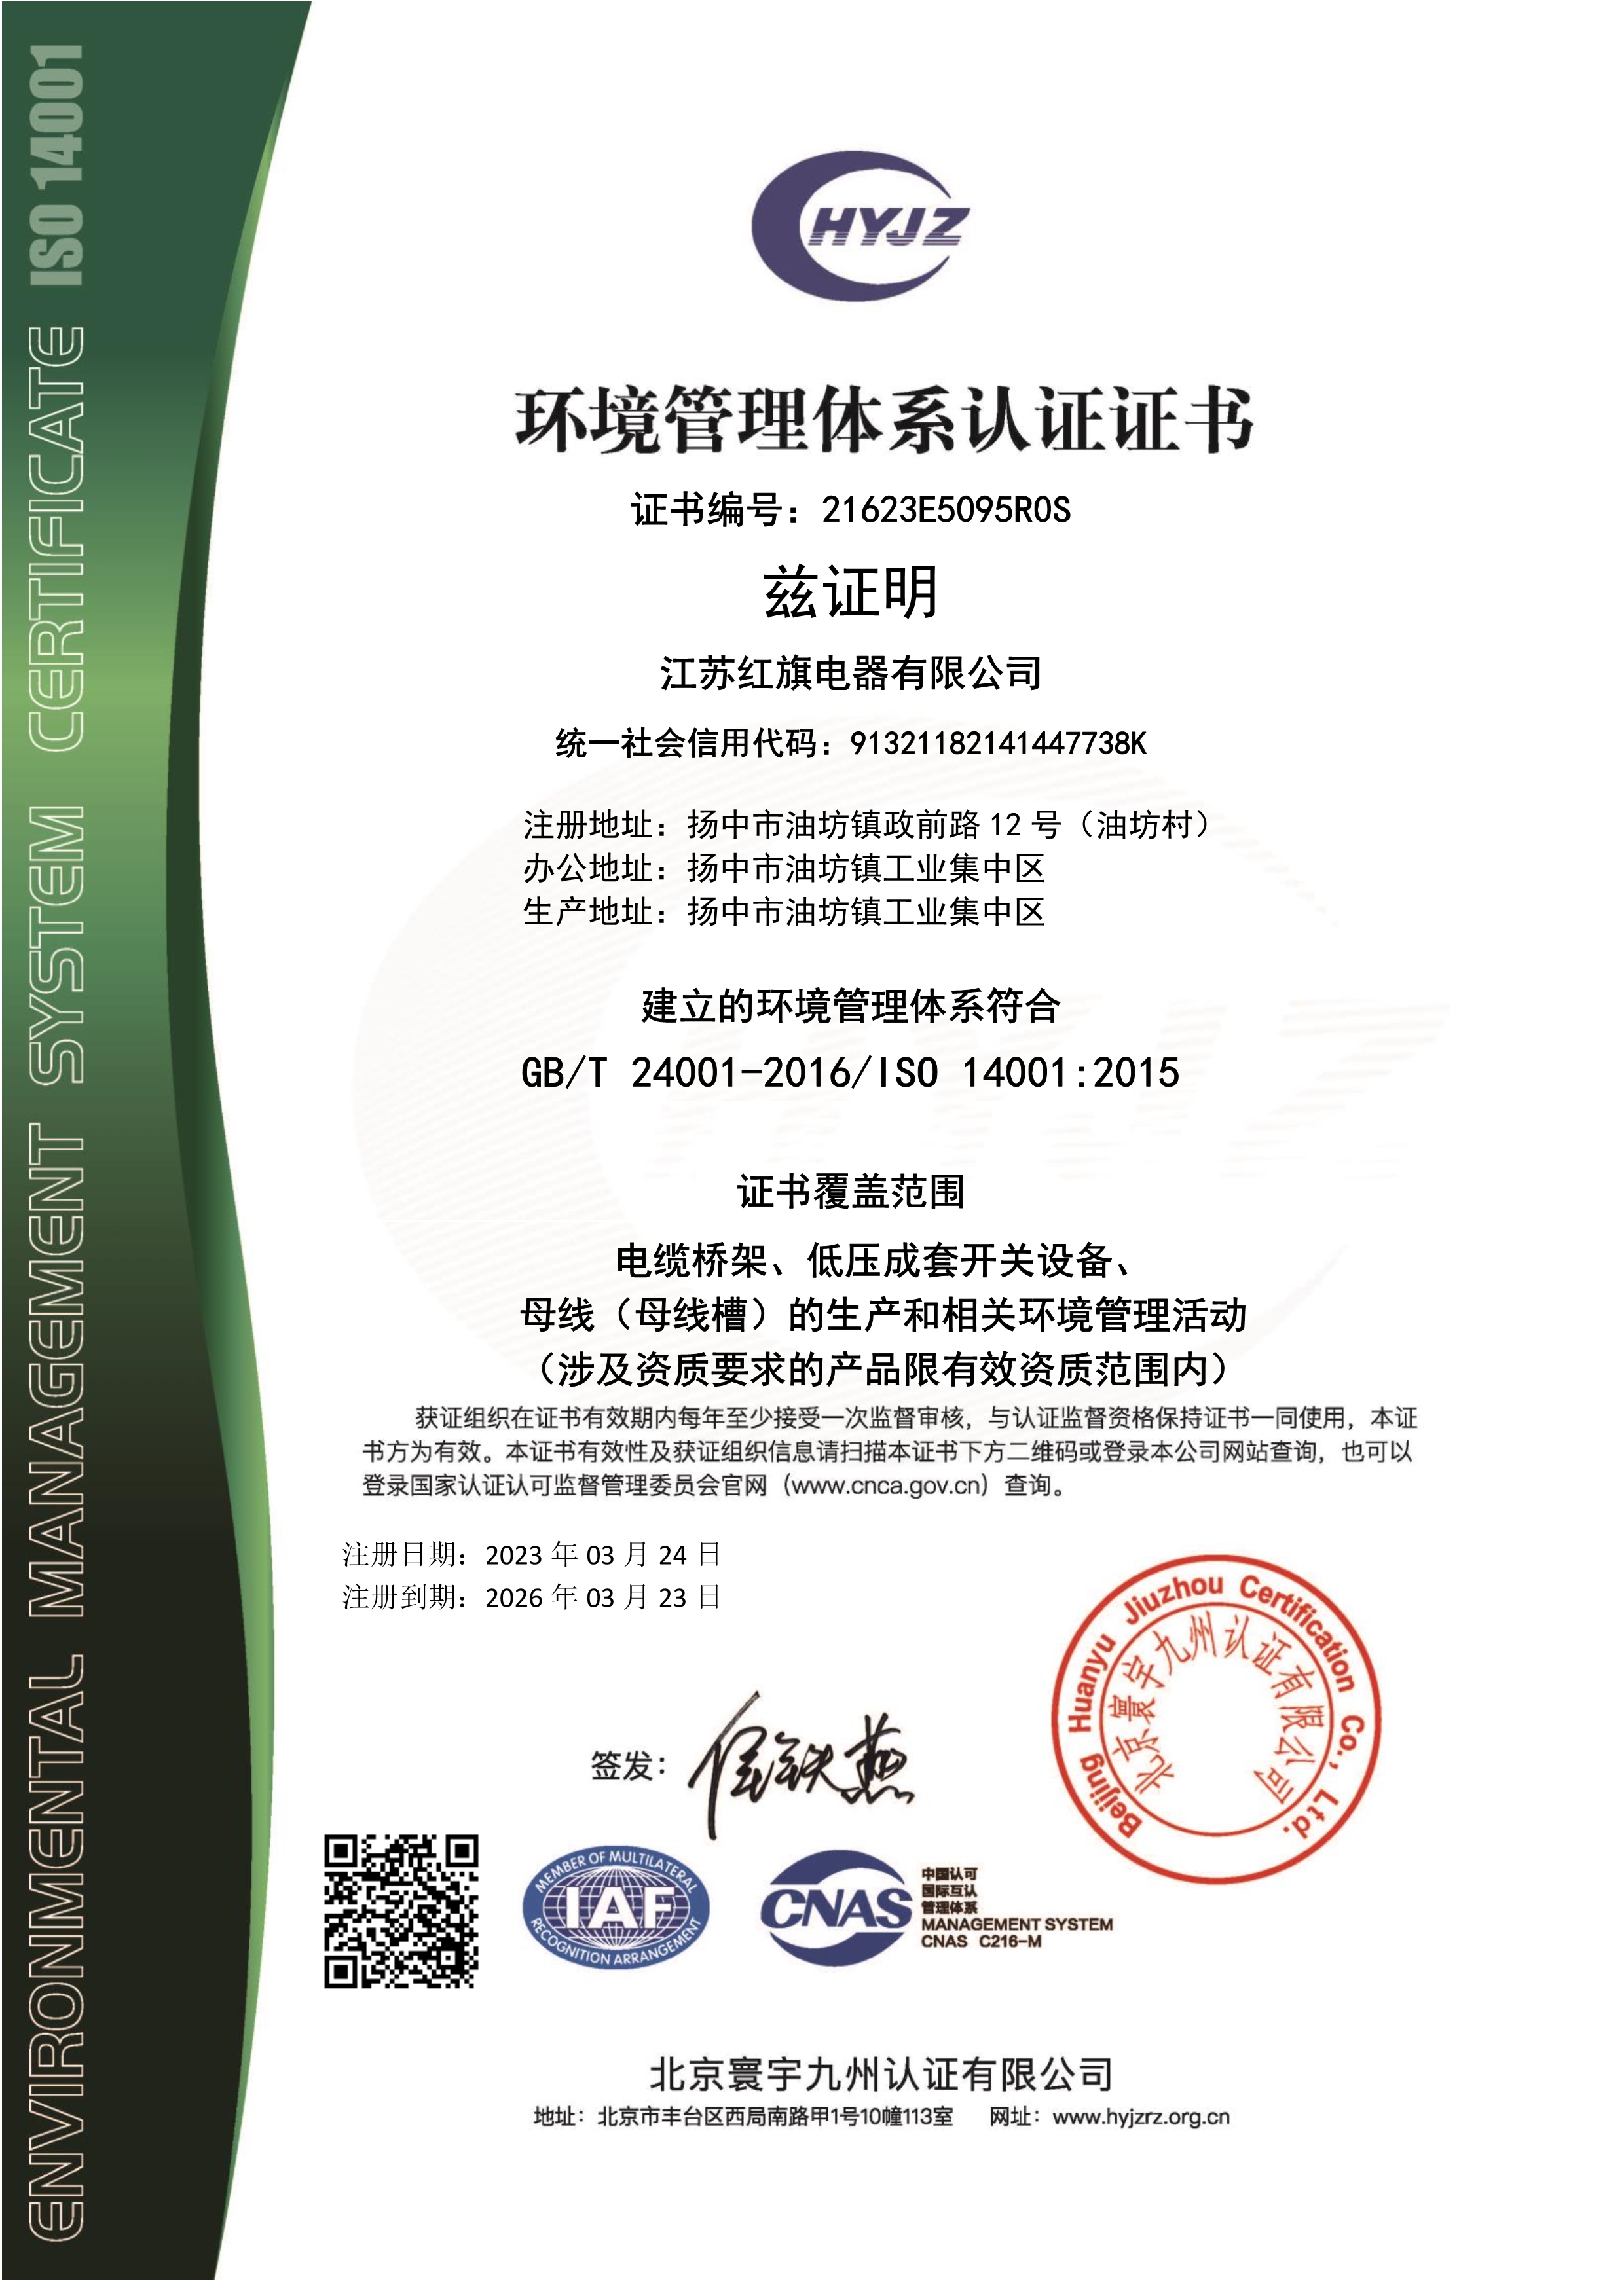 032523082901_021623E5095江苏红旗电器有限公司证书中文带标EMS_1.Jpeg